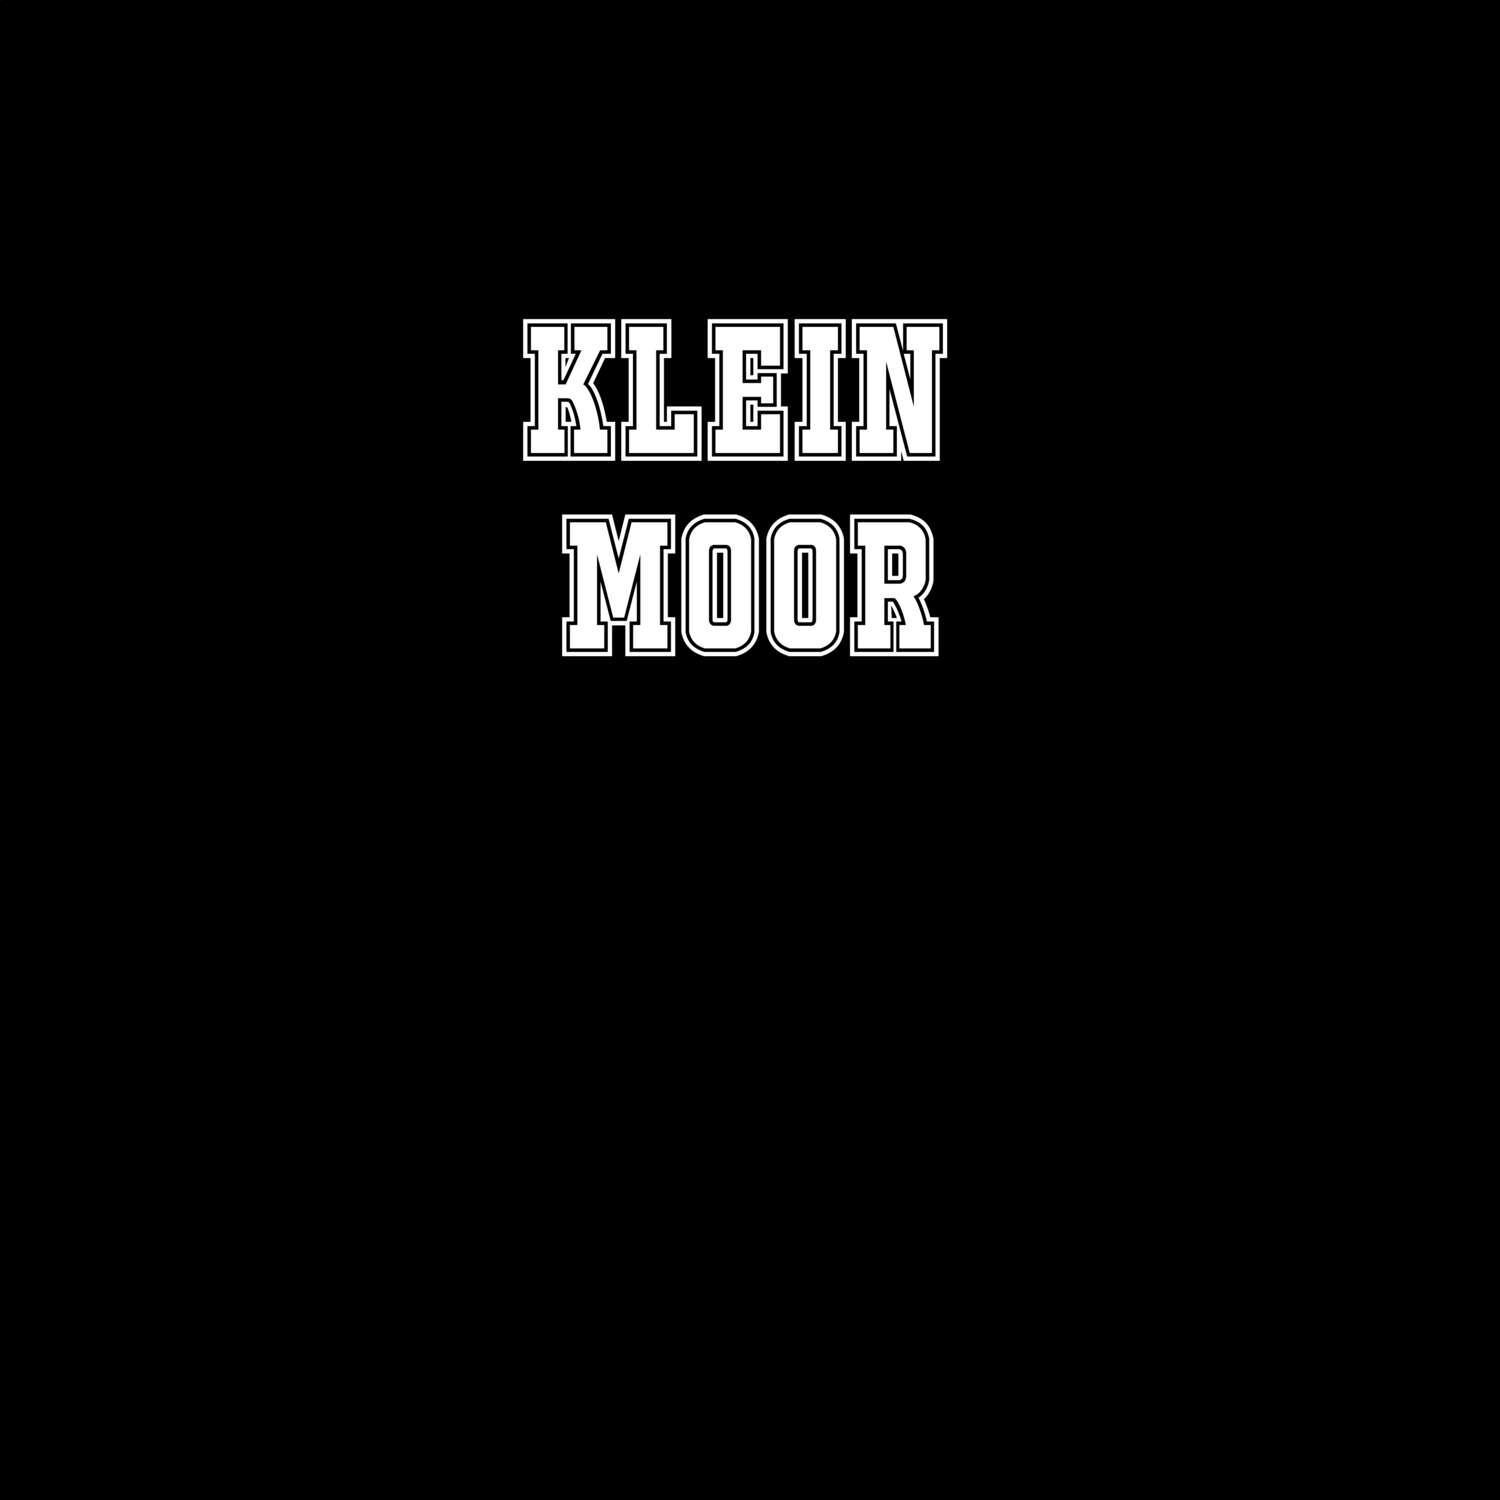 Klein Moor T-Shirt »Classic«